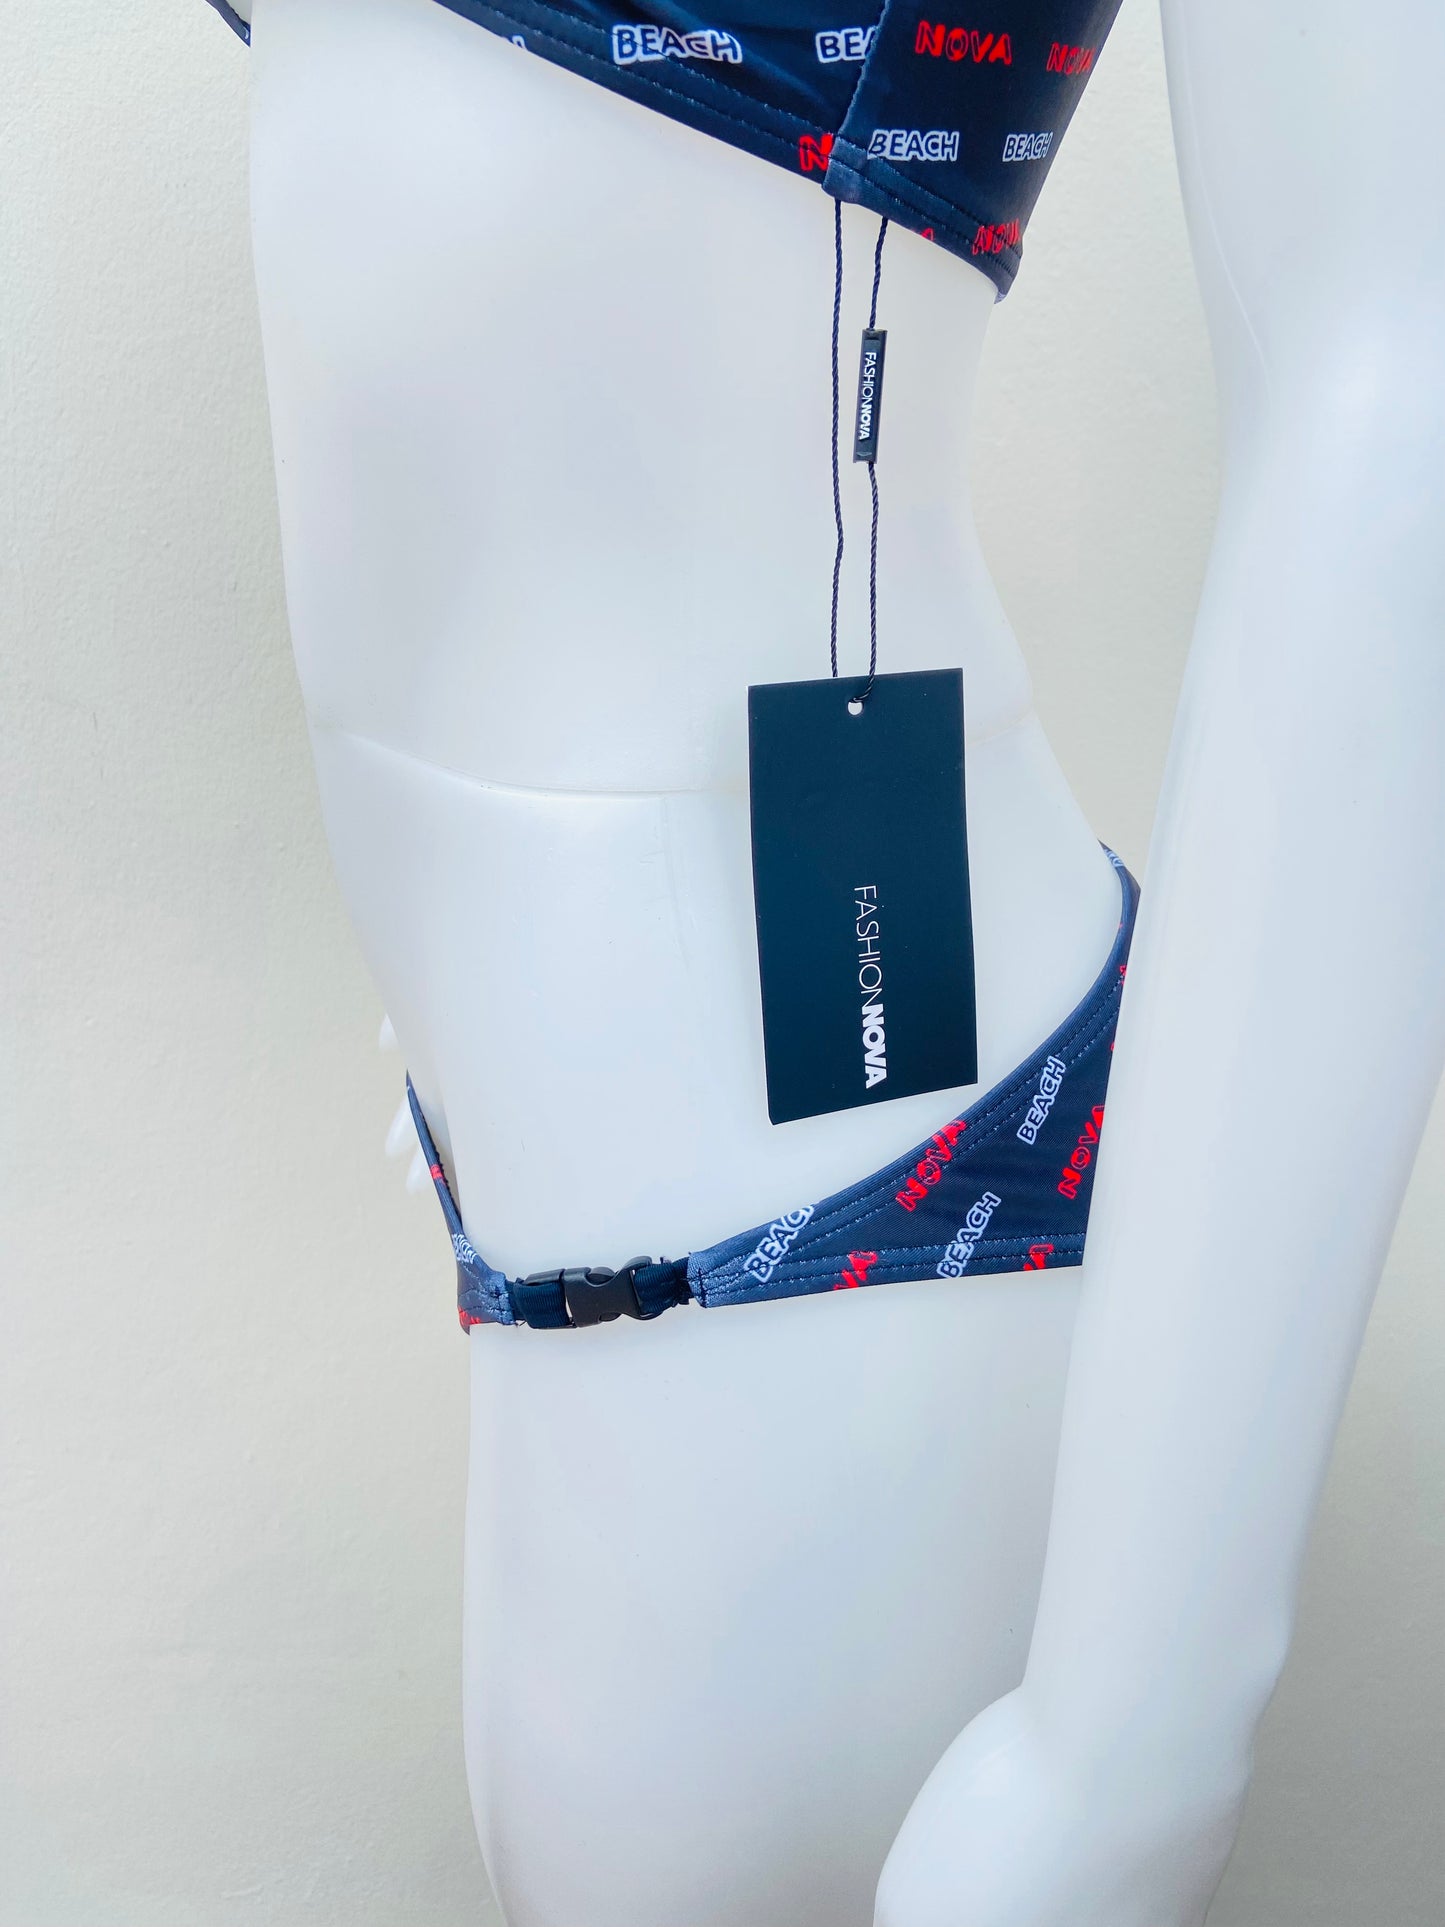 Biquini Fashion Nova original azul marino con abierto en la parte delantera y clicks negros, y letras en rojo y blanco BEACH NOVA.